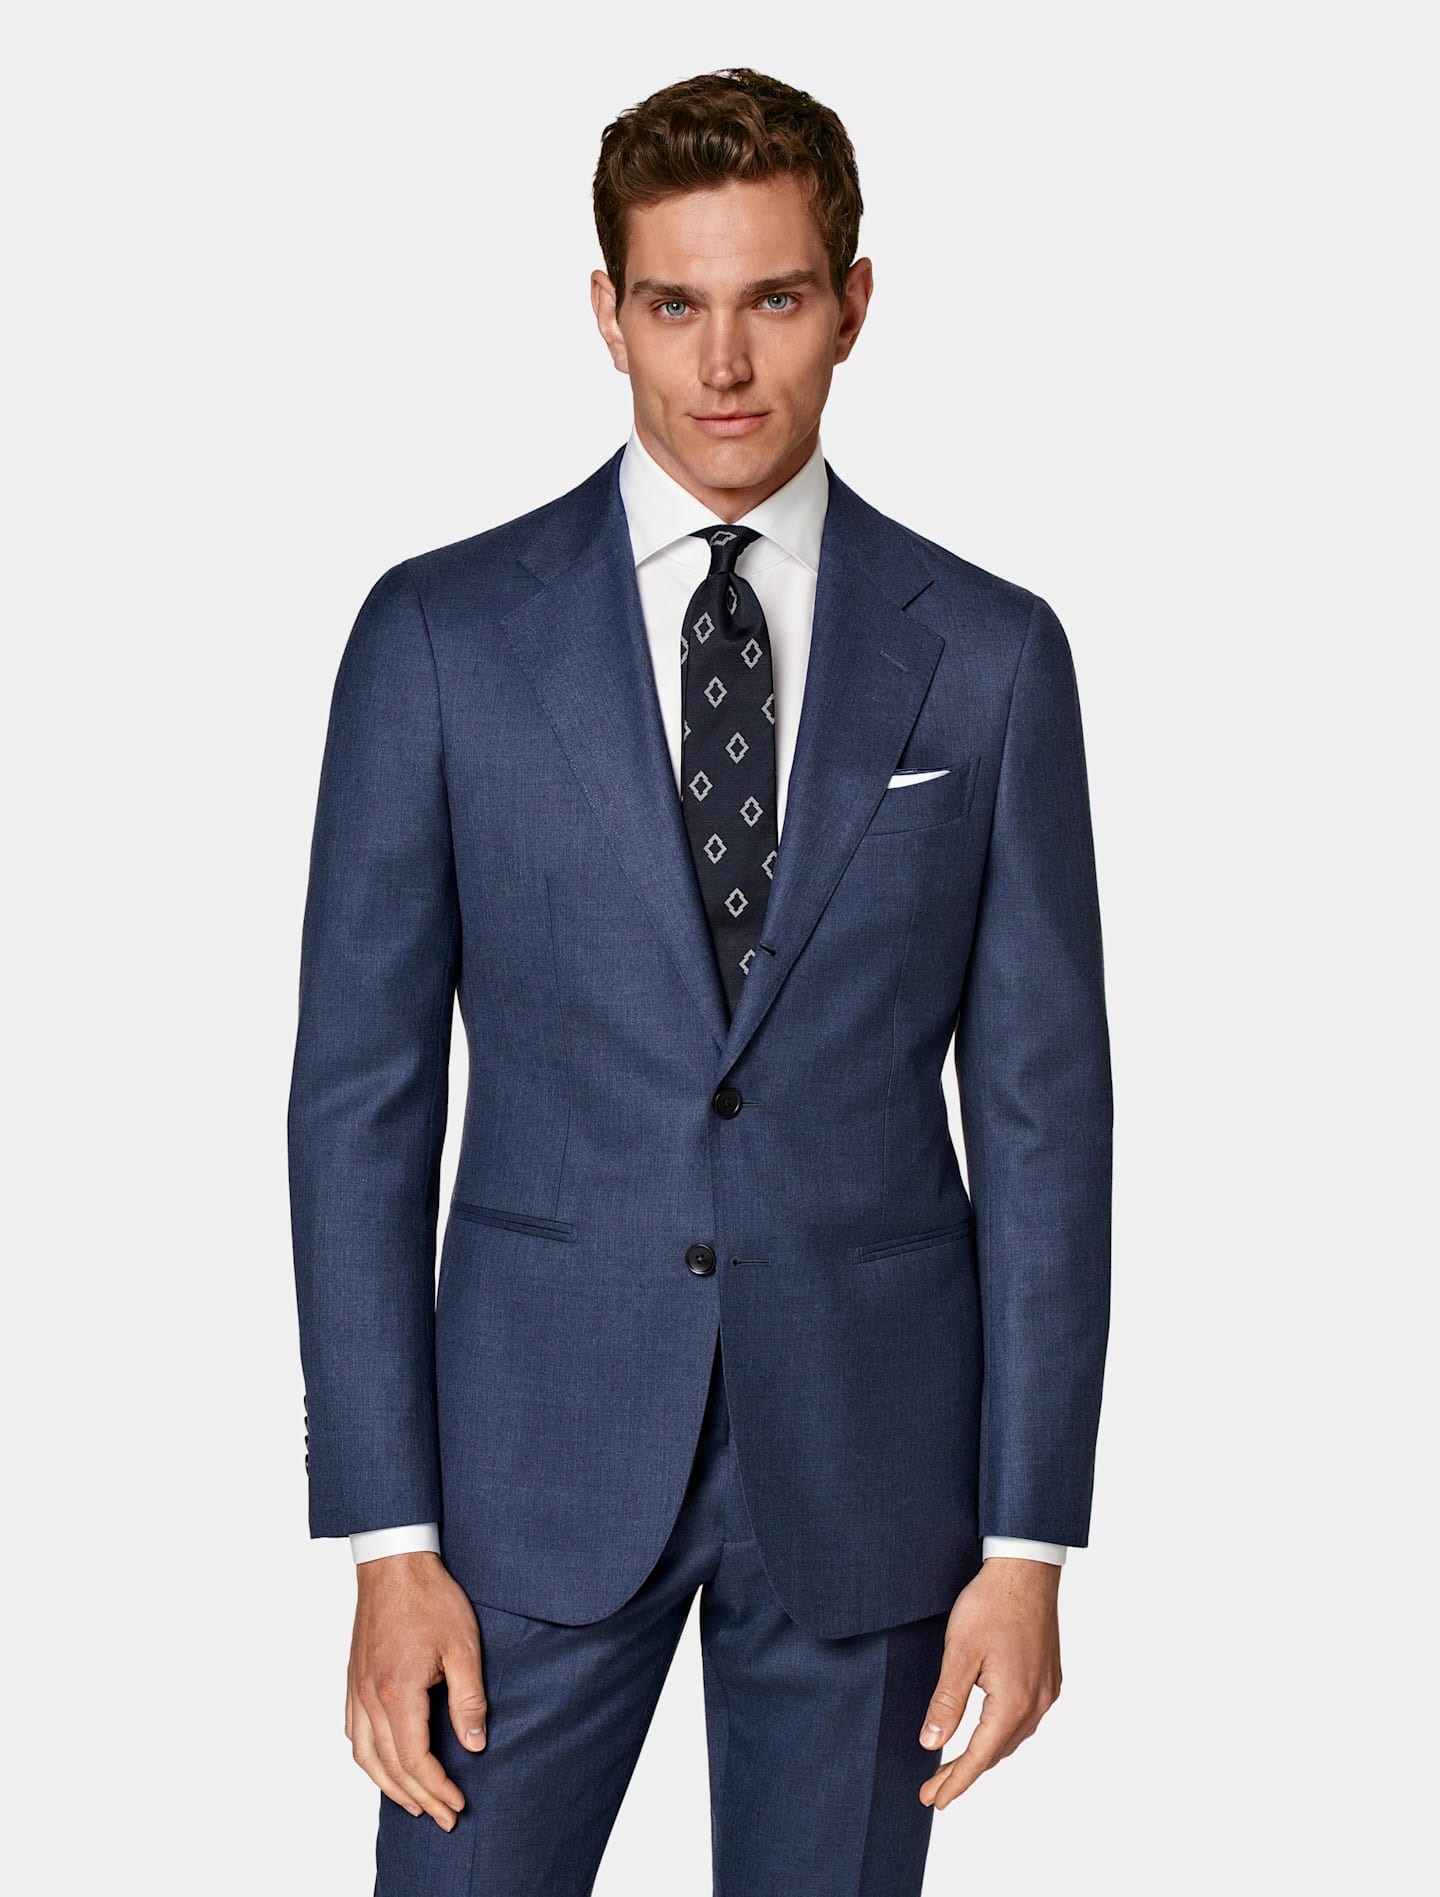 Traje azul de corte sencillo con camisa blanca y corbata estampada.